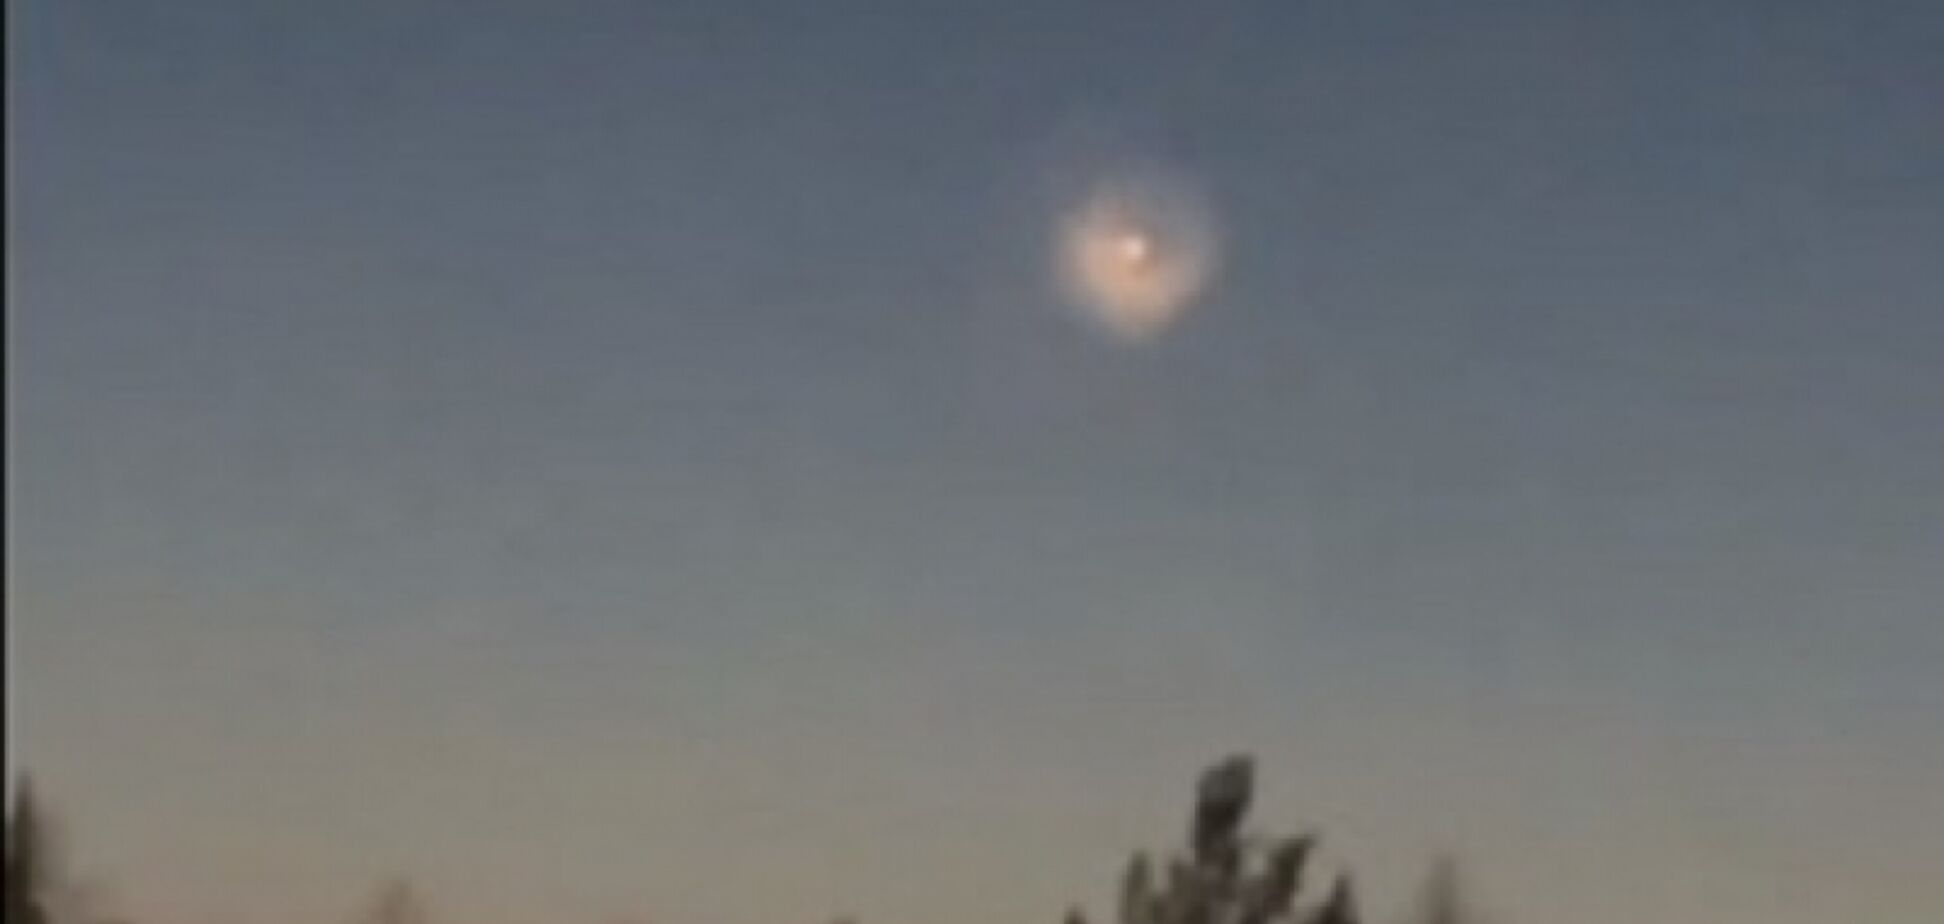 НЛО в форме пончика сняли в небе над Одессой (иллюстрация)